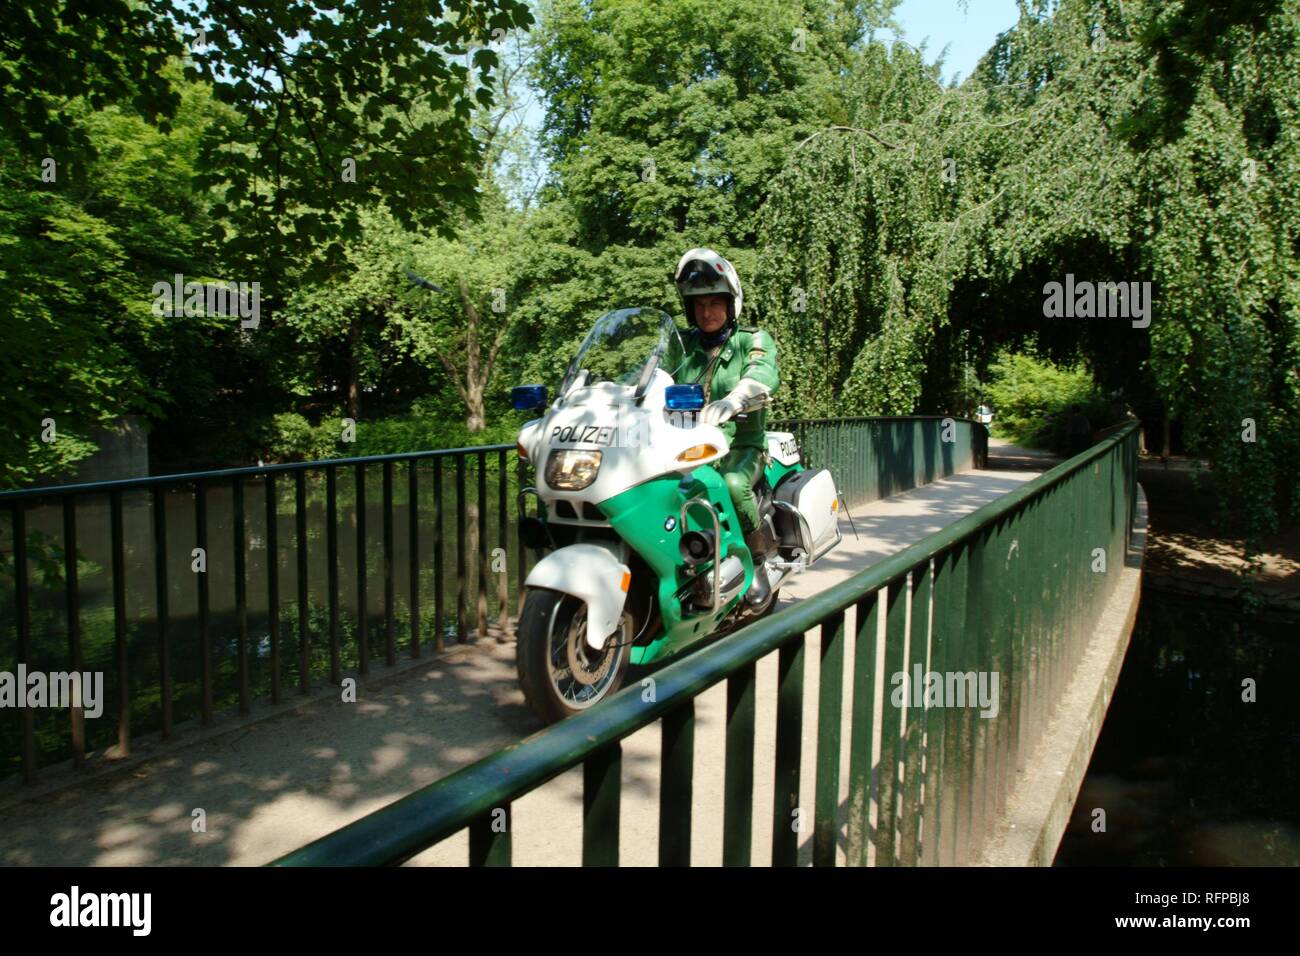 DEU, Germany, Duesseldorf : Police bike patrol. Stock Photo